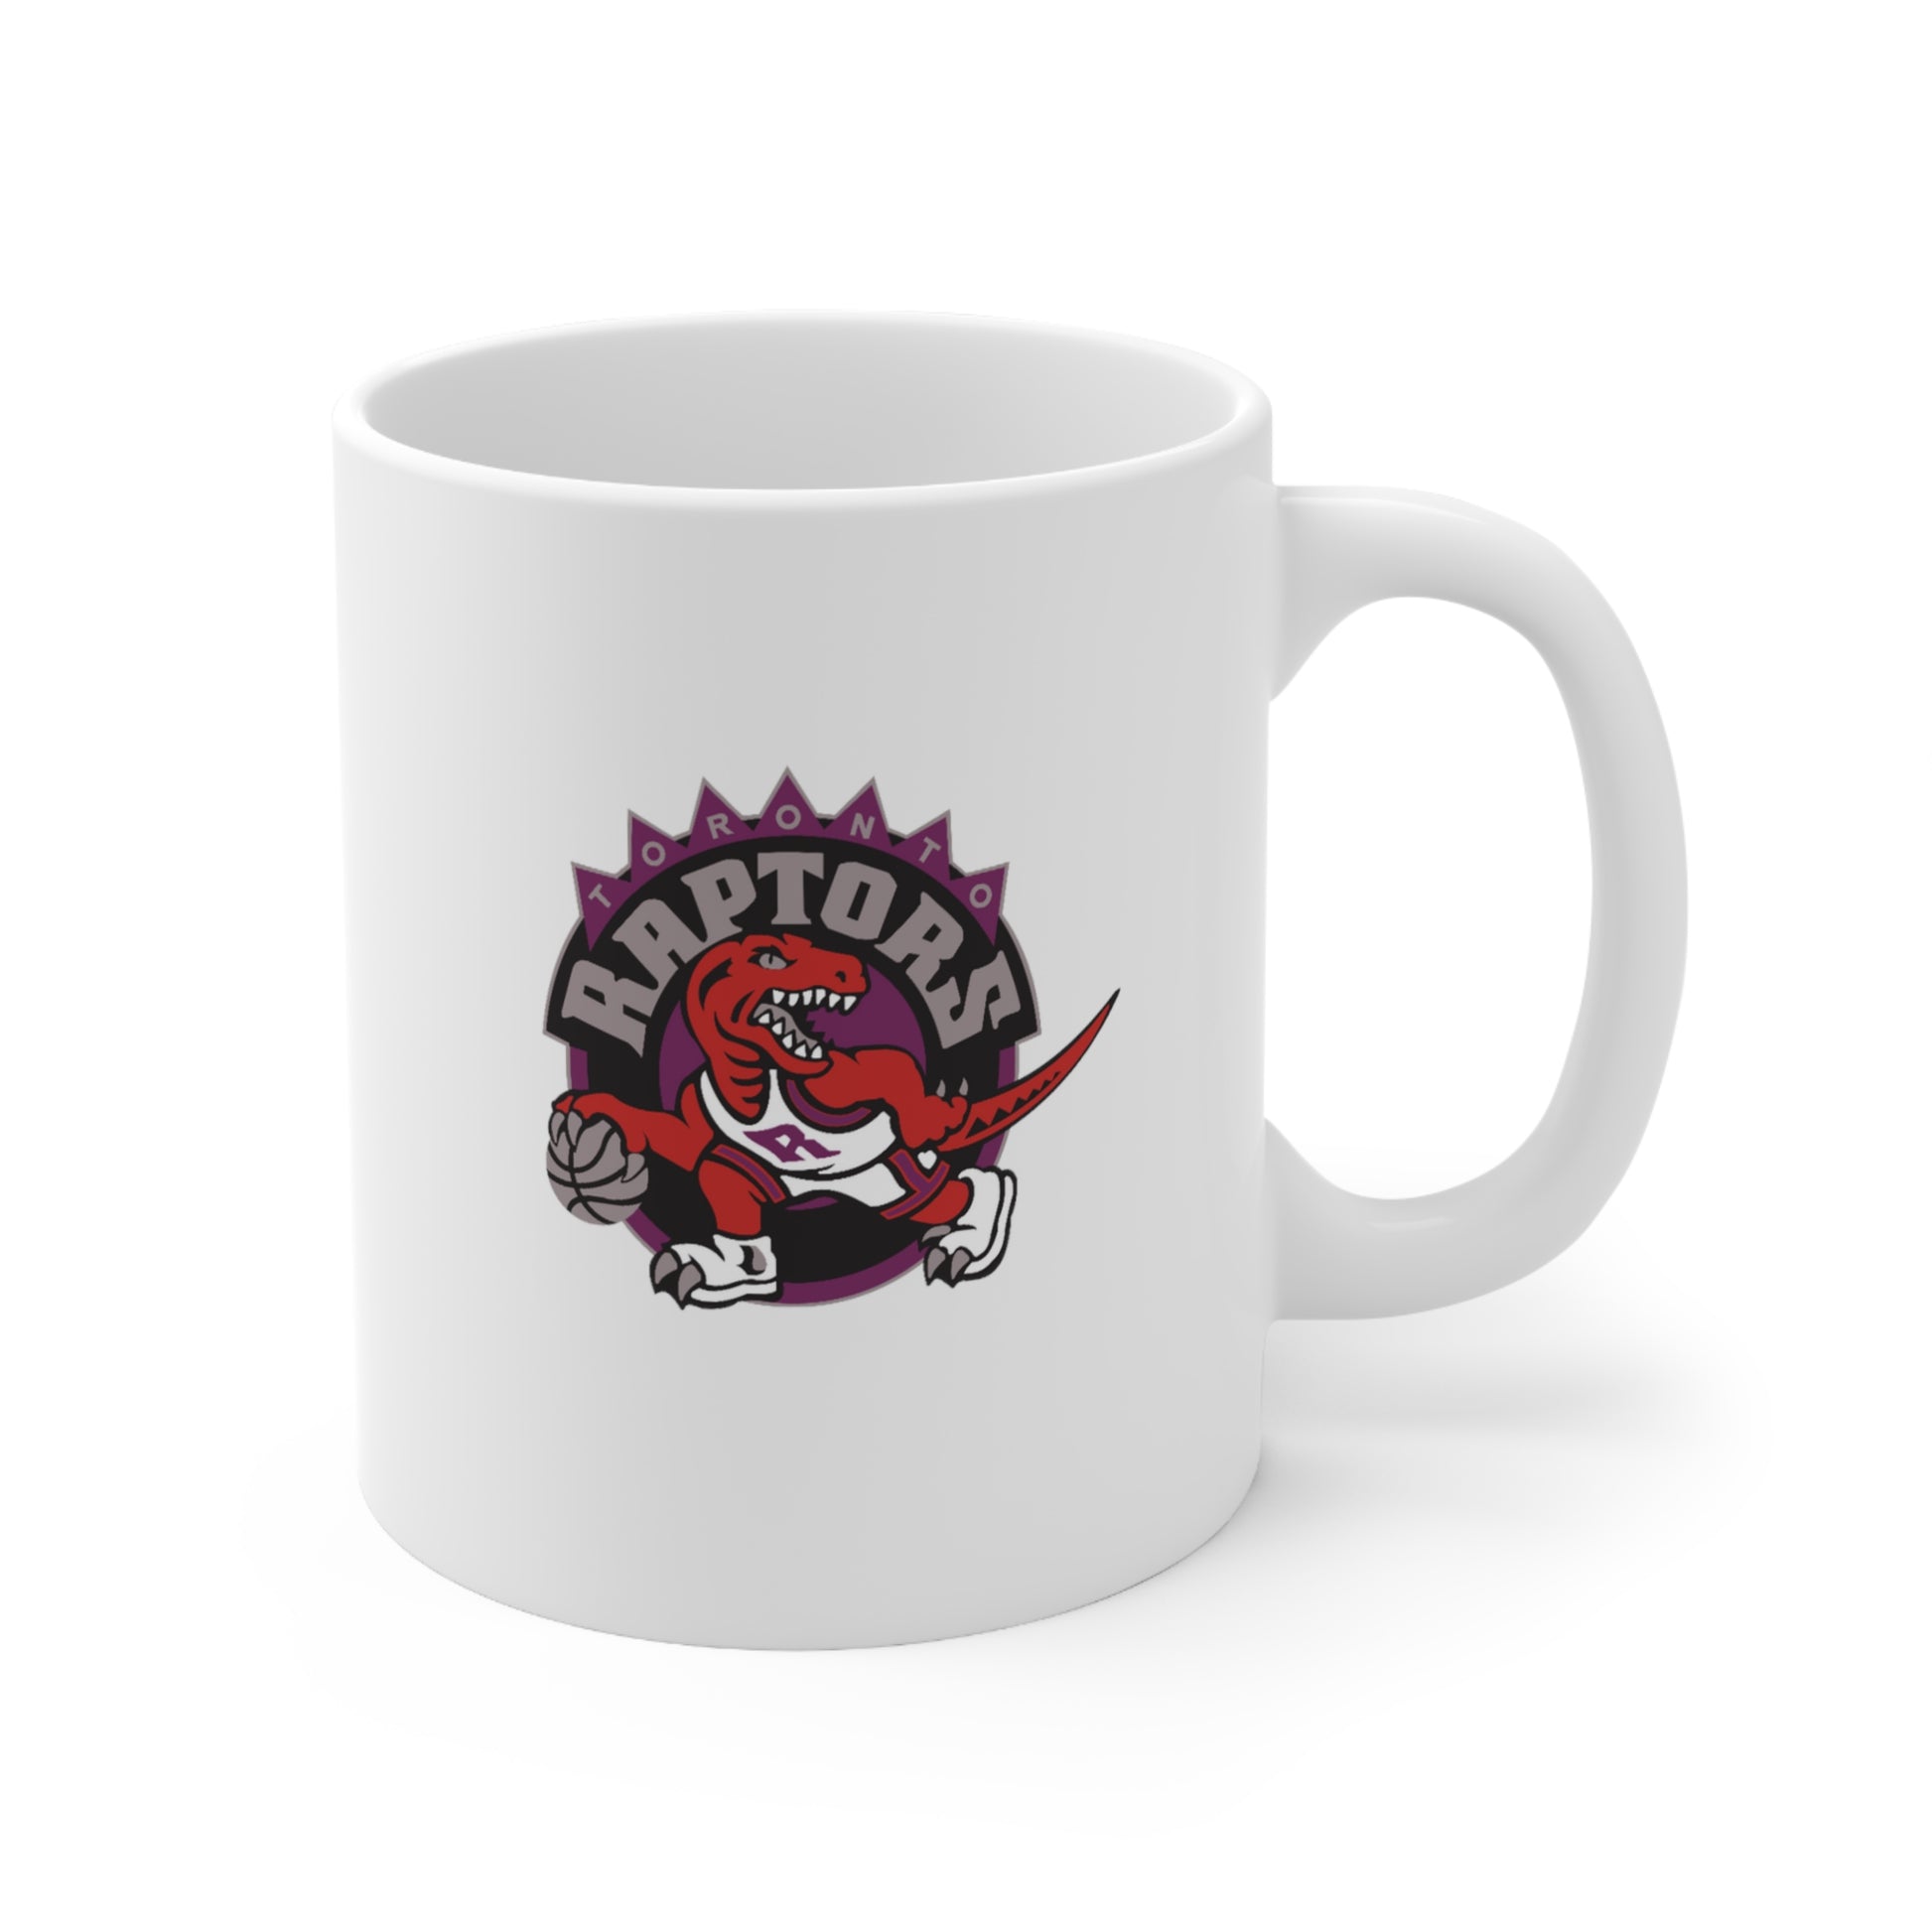 Toronto Raptors-1 Ceramic Mug